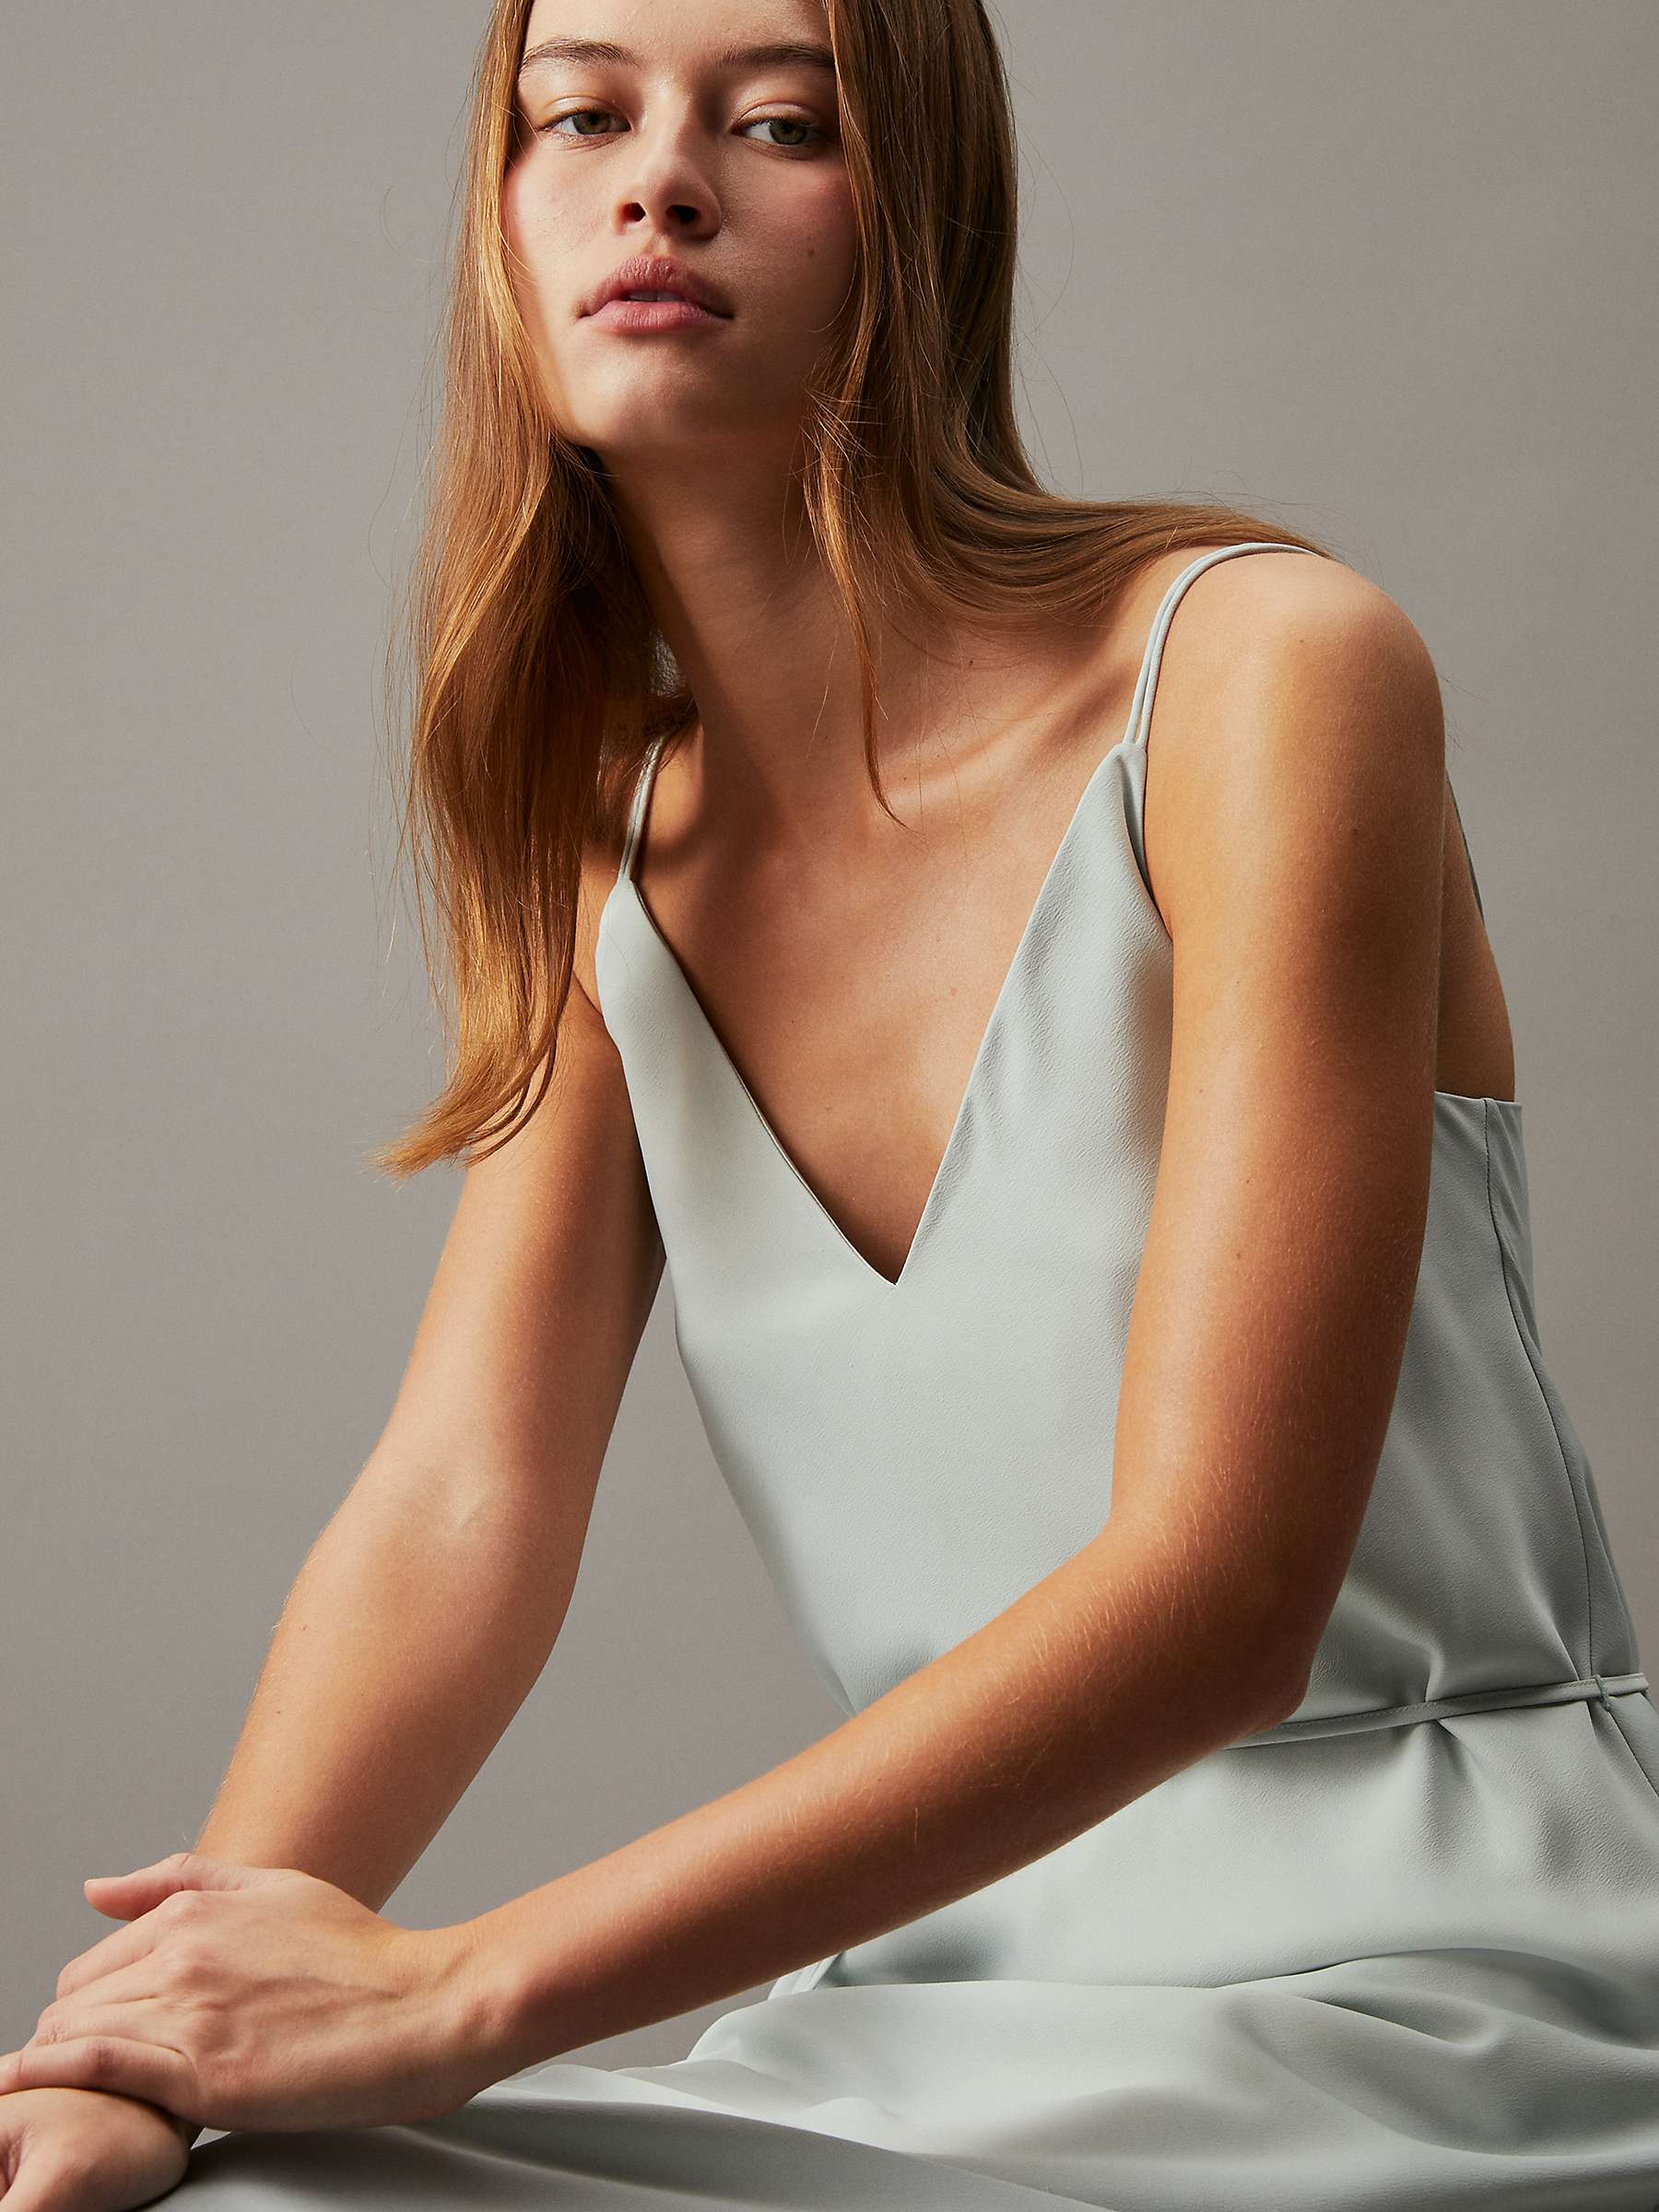 Buy Calvin Klein Slip Midi Dress, Morning Frost Online at johnlewis.com